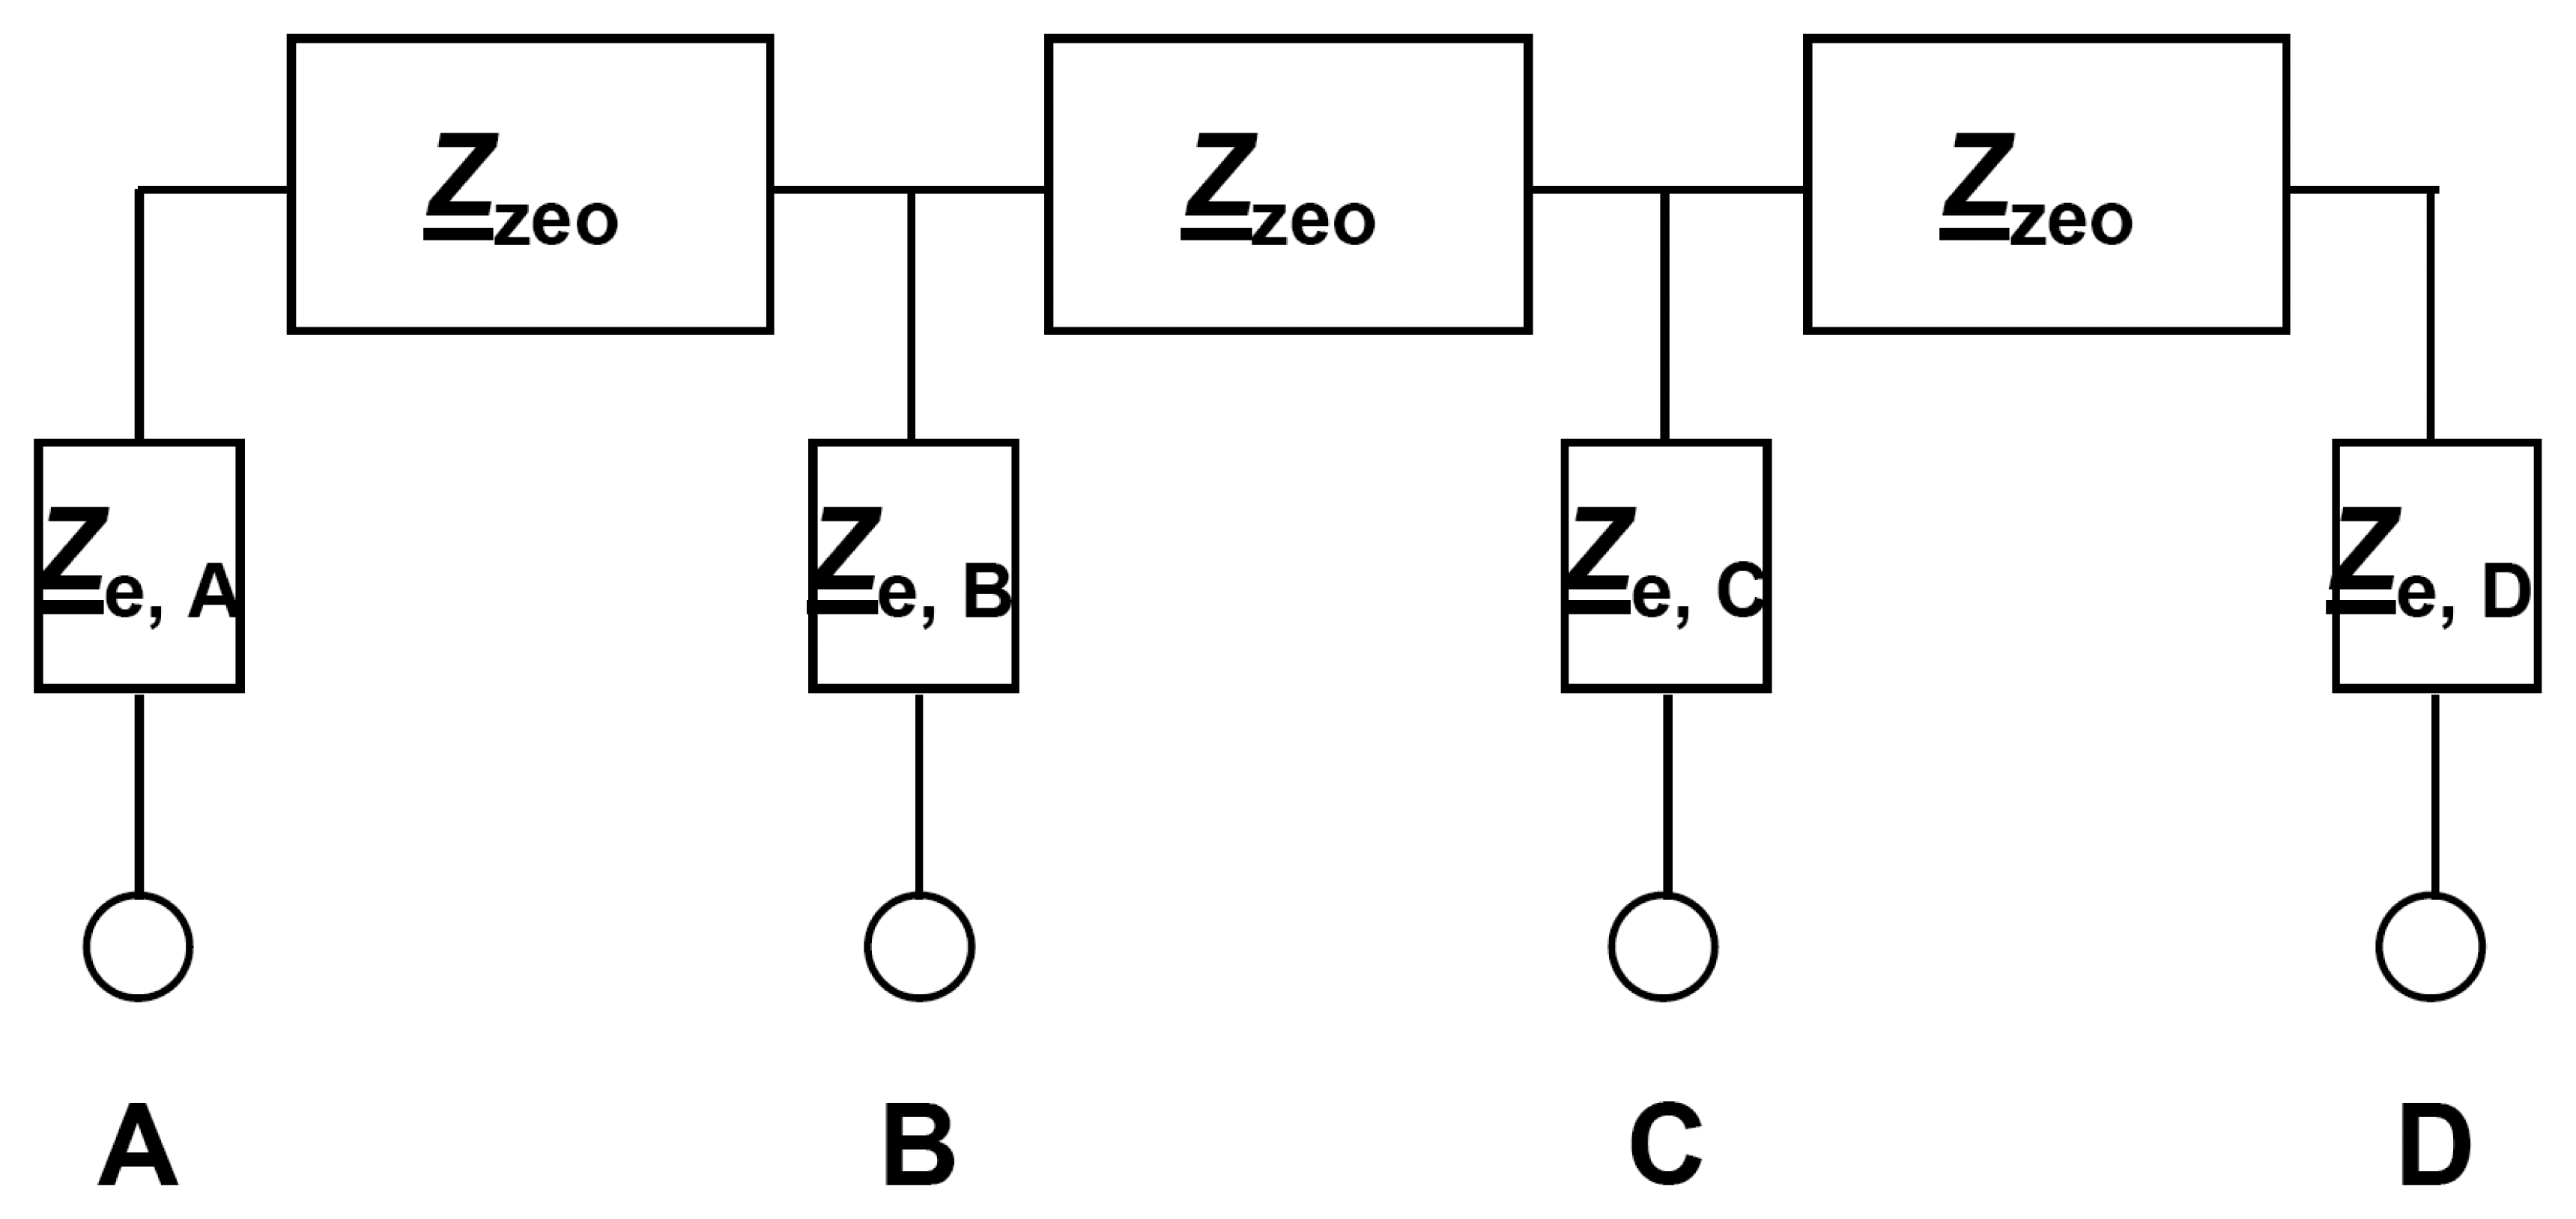 apexi vafc wiring diagram